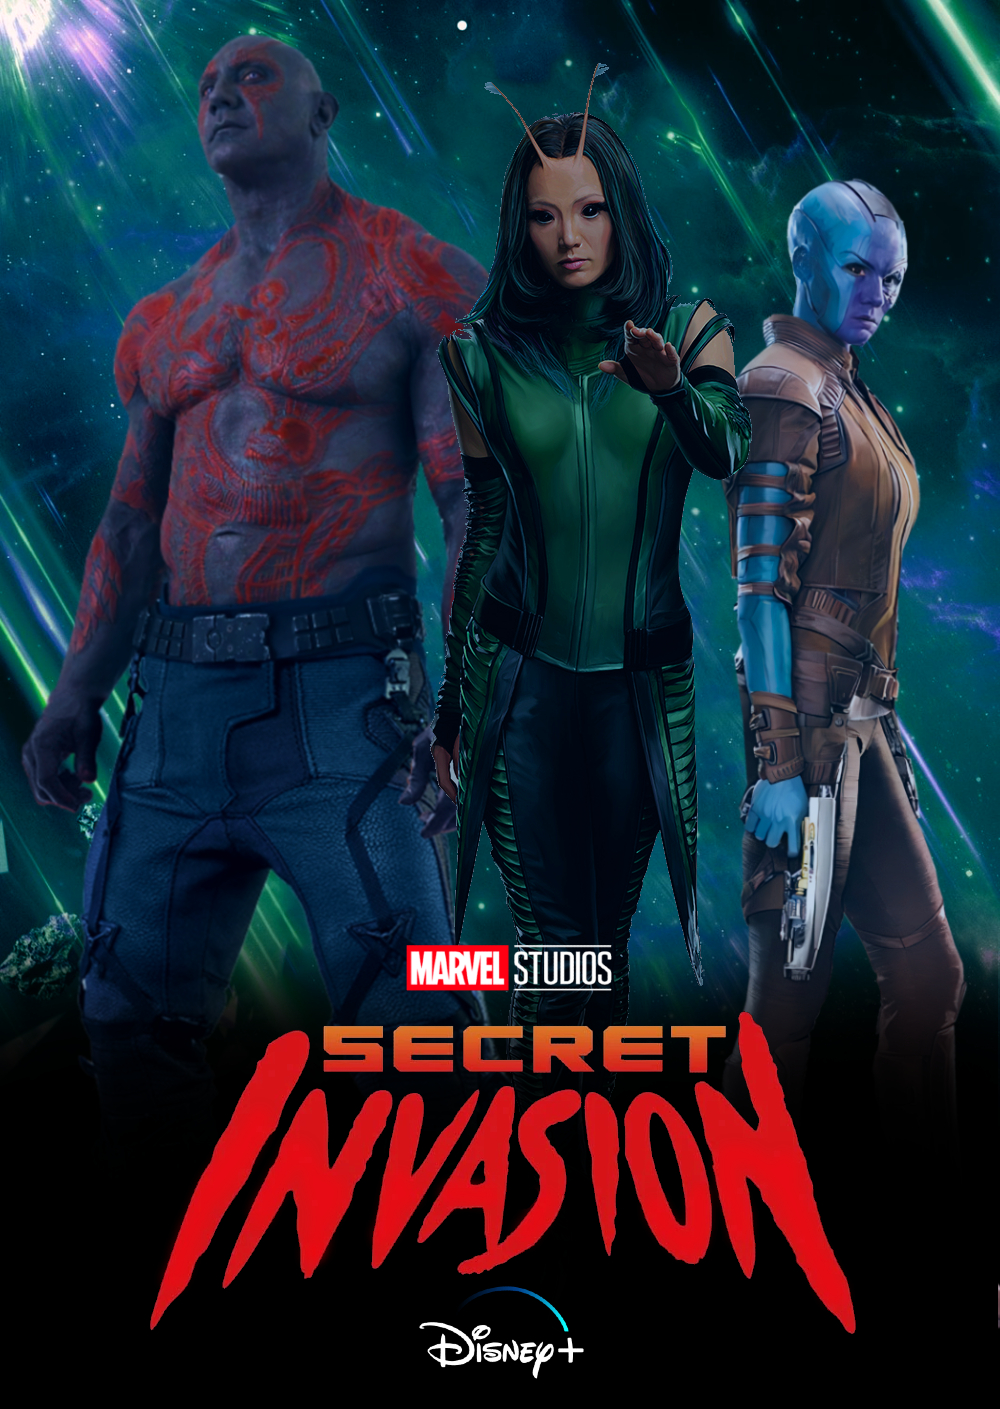 Avengers Secret Invasion Marvel Poster 2 by bertzee on DeviantArt